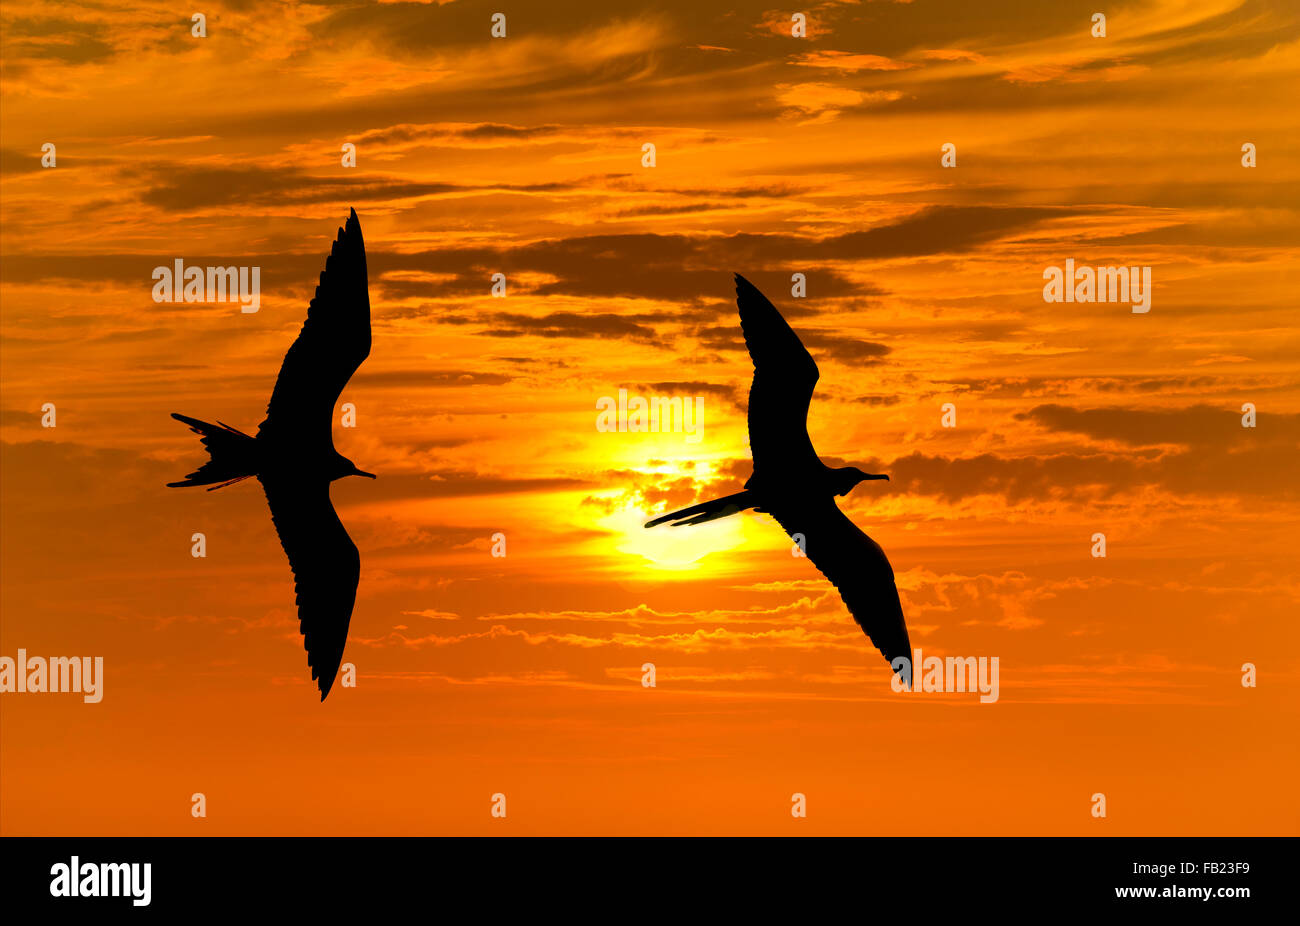 Oiseaux silhouette est deux oiseaux voler contre un soleil clair de ciel coucher de soleil orange. Banque D'Images